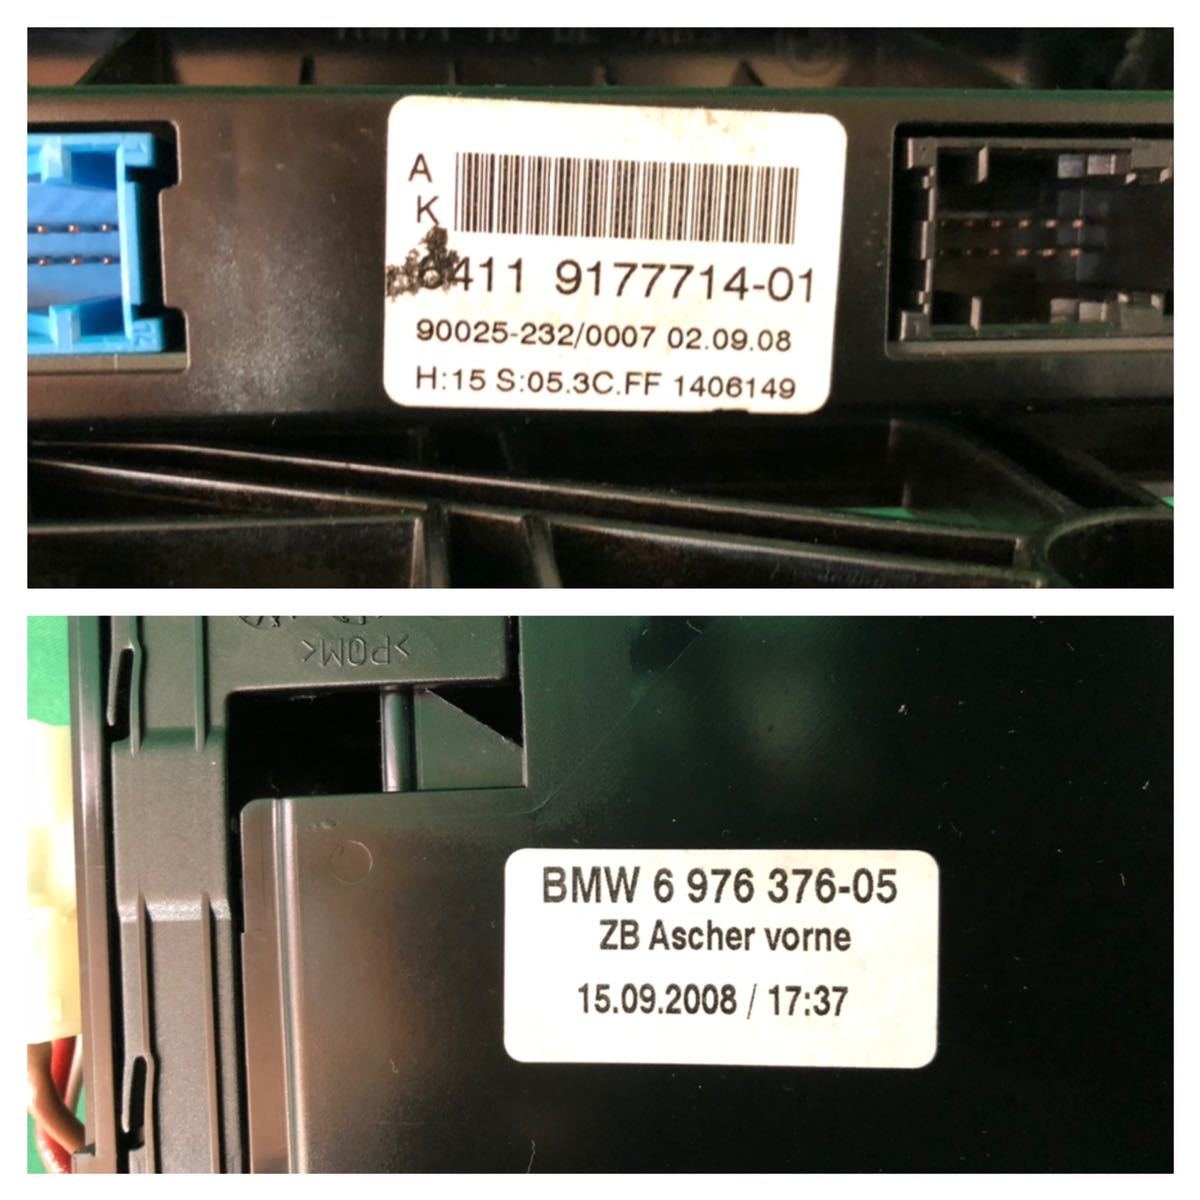 MQ268 б/у BMW PU25 5 серии 525i эпоха Heisei 21 год 6 месяц оригинальный выключатель кондиционера аудио панель гарантия работы 6411 9177714-01 6 976 376-05